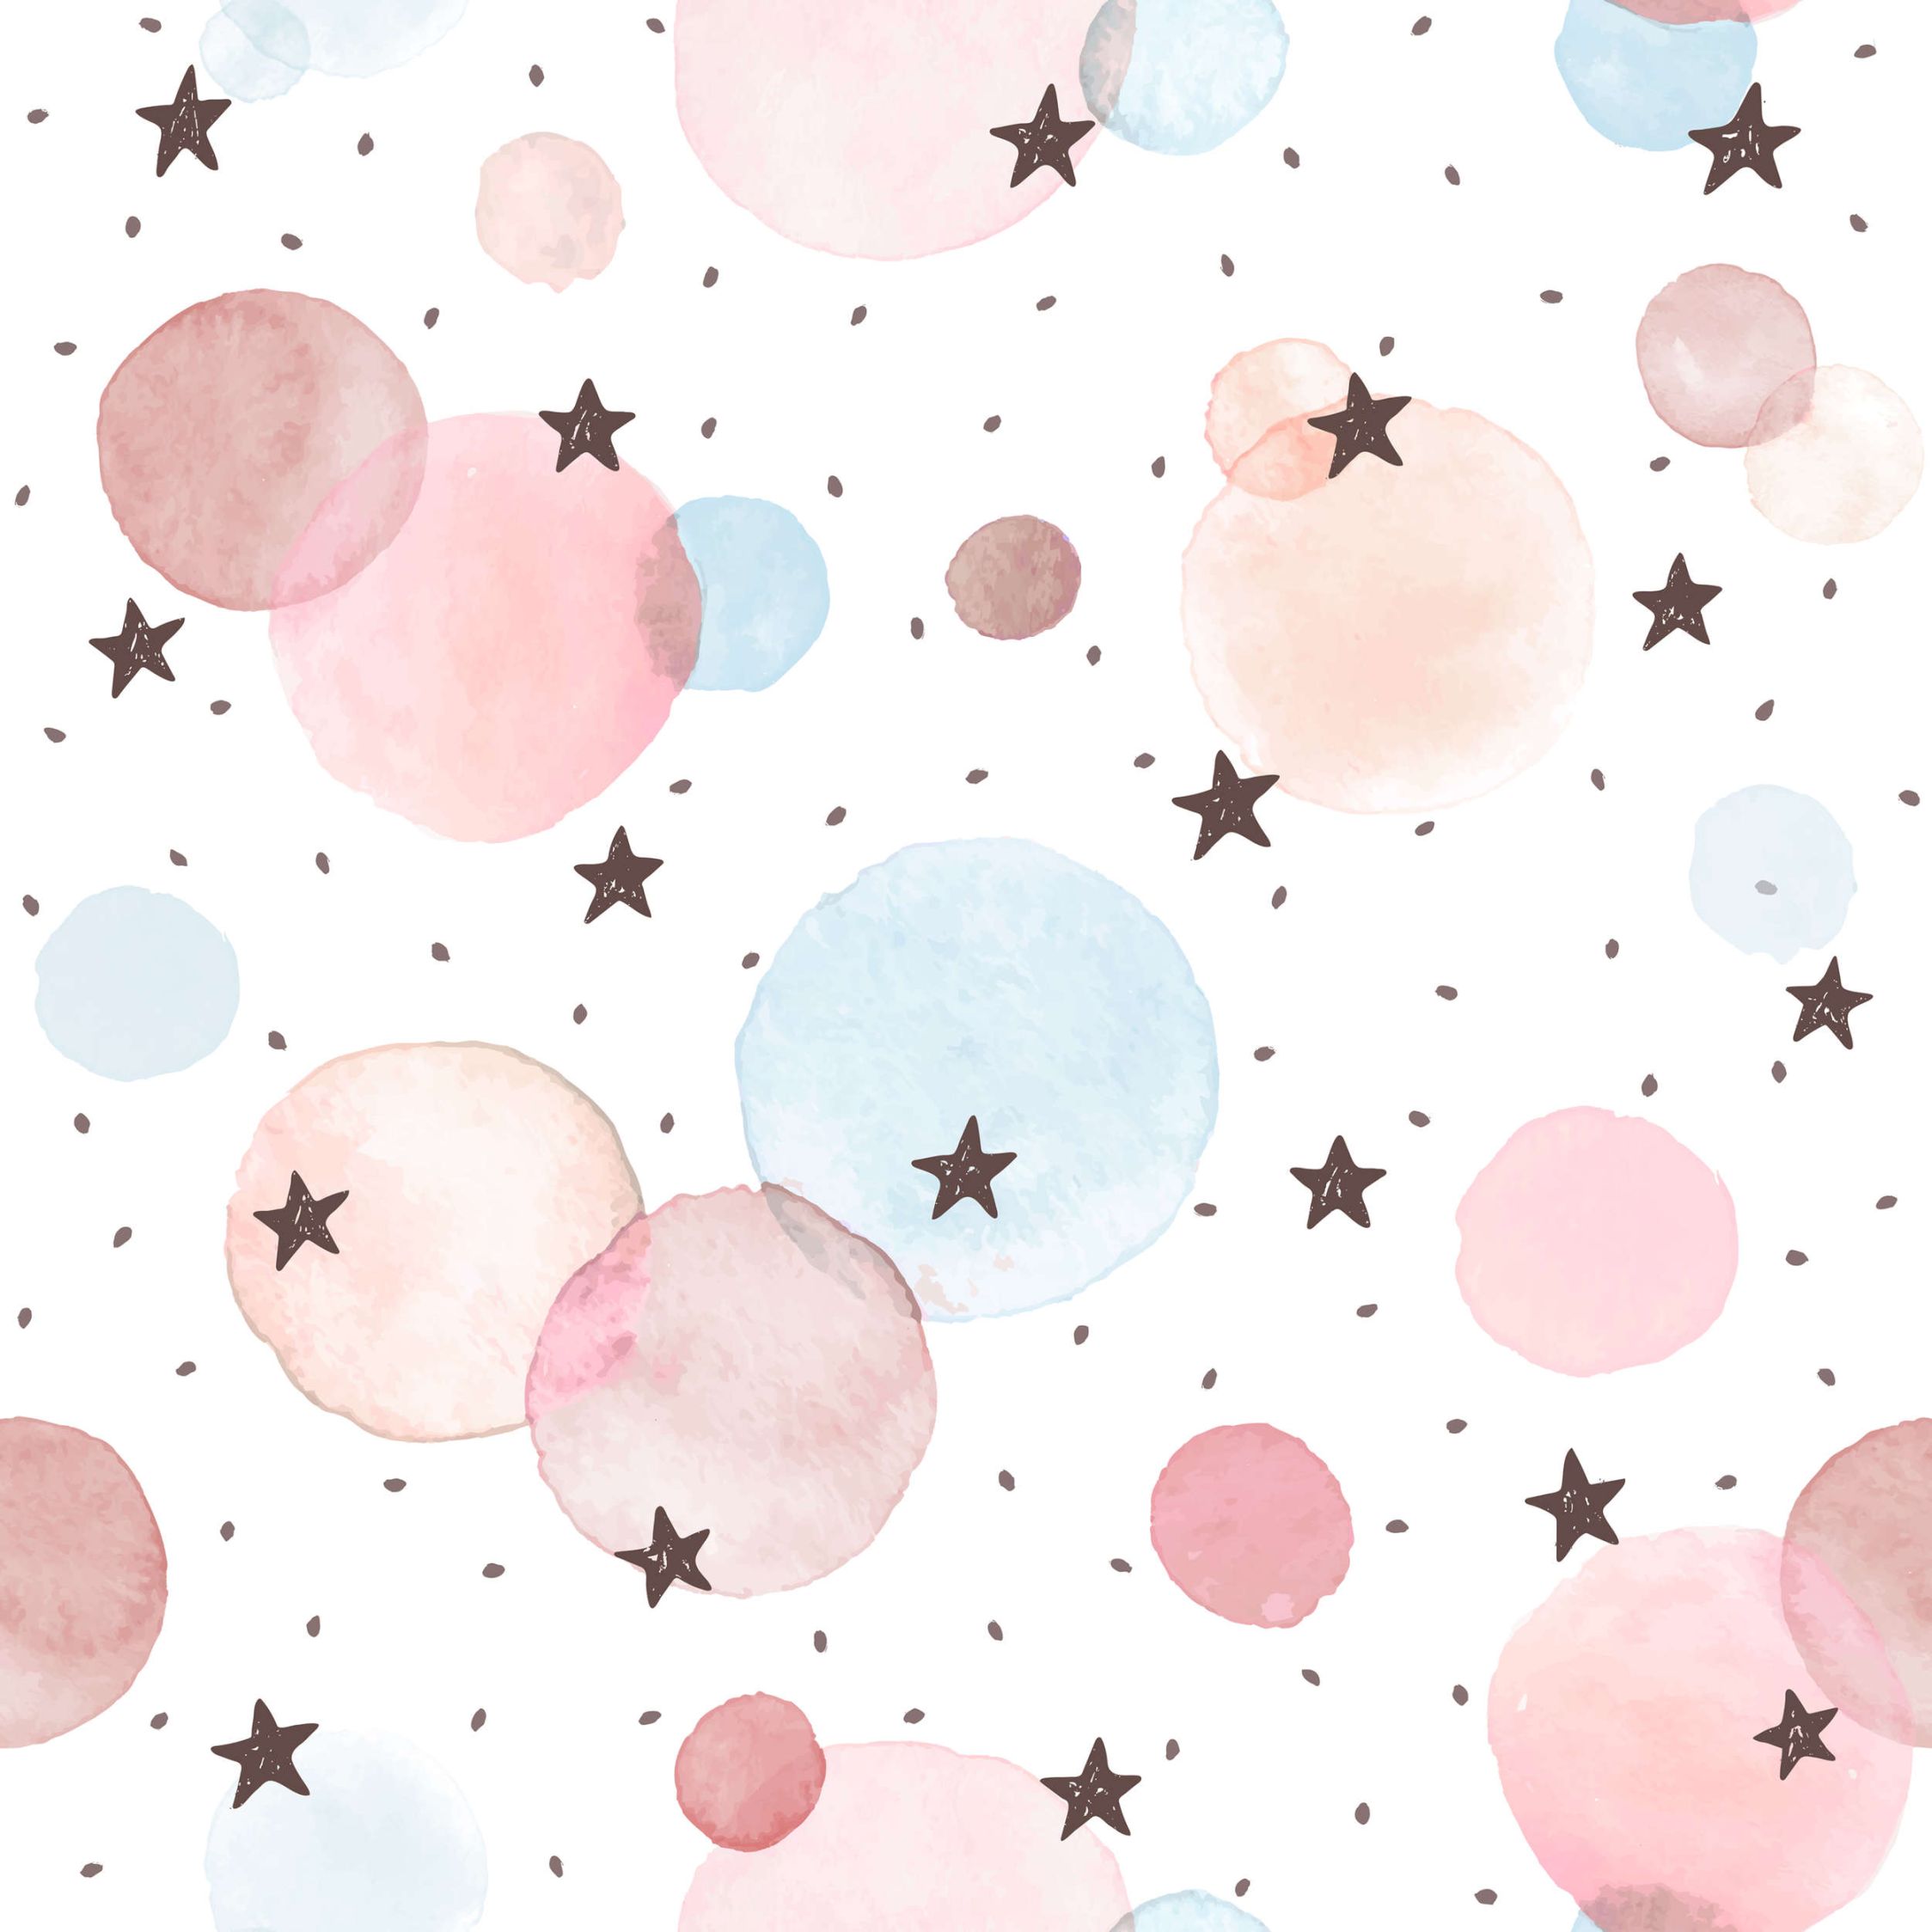             Fotobehang voor kinderkamer met sterren, stippen en cirkels - Glad & parelmoervlies
        